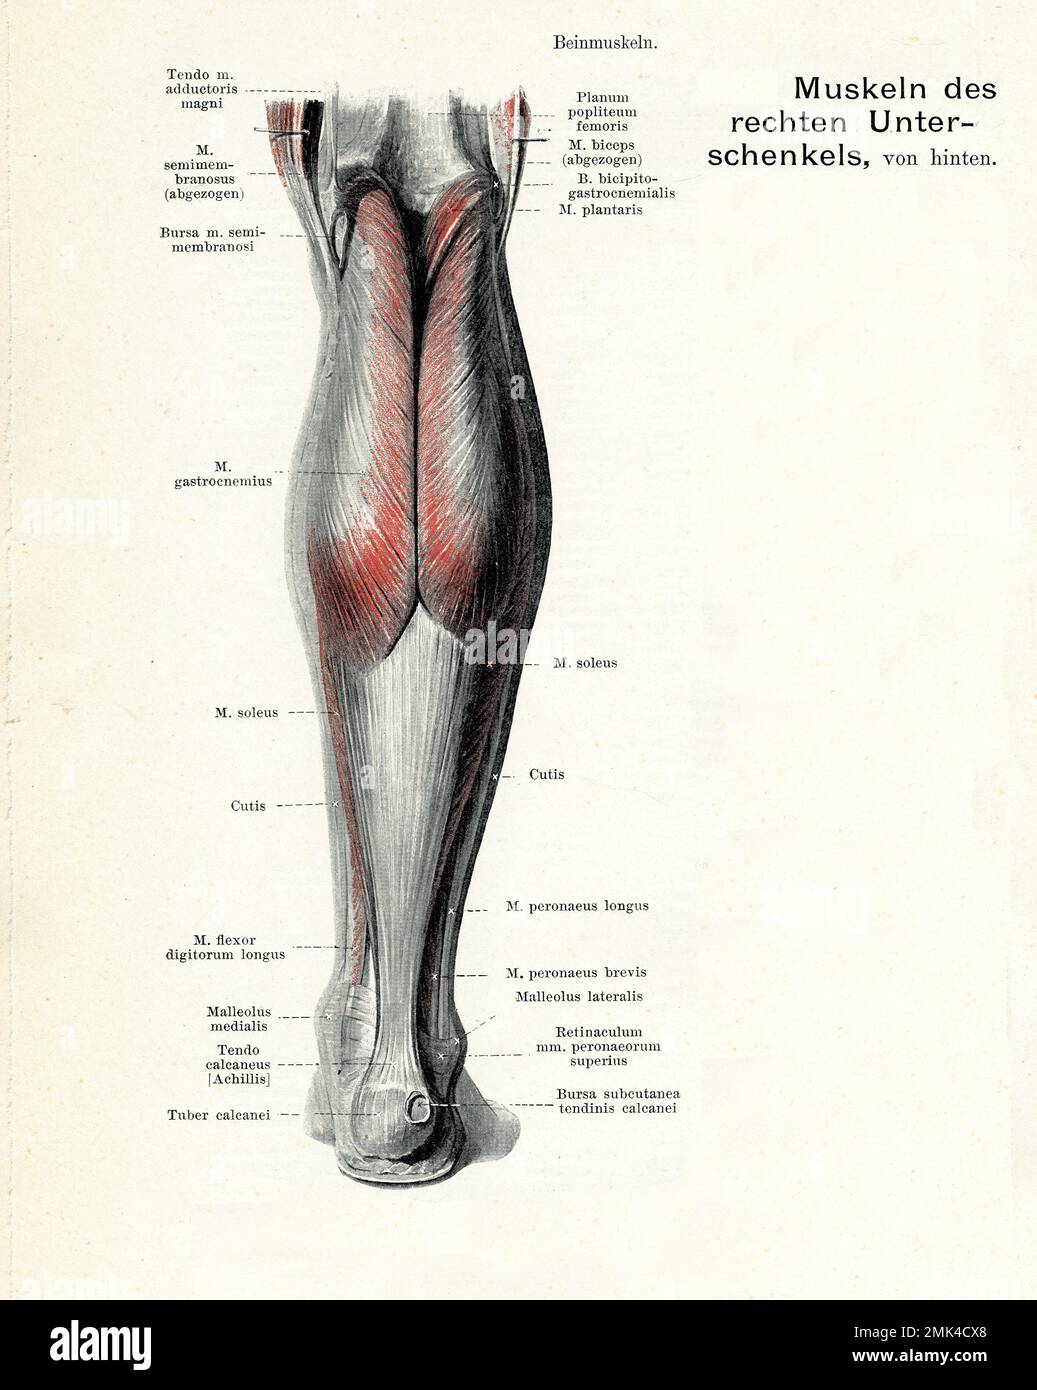 Illustrazione vintage della muscolatura anatomica della vista posteriore della gamba inferiore, con descrizioni anatomiche tedesche Foto Stock